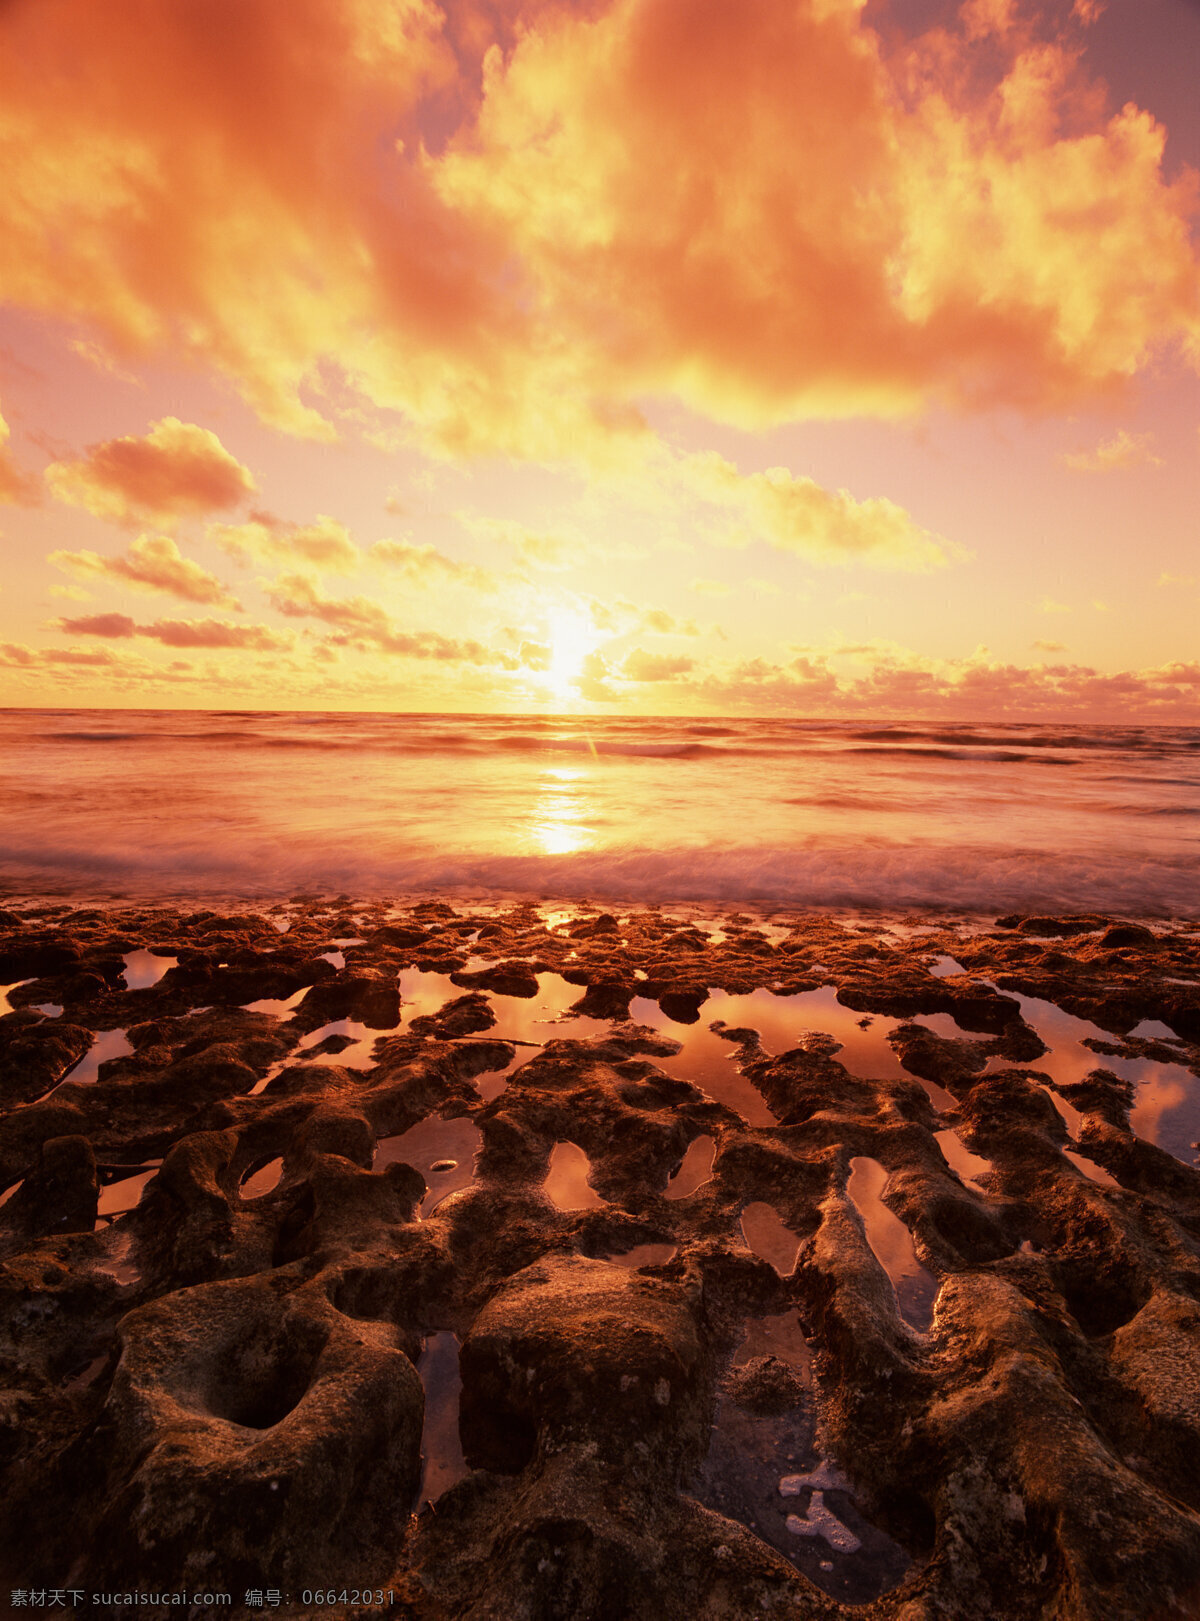 黄昏 沙滩 自然风光 美丽 自然 太阳 夕阳 火烧云 山水风景 风景图片